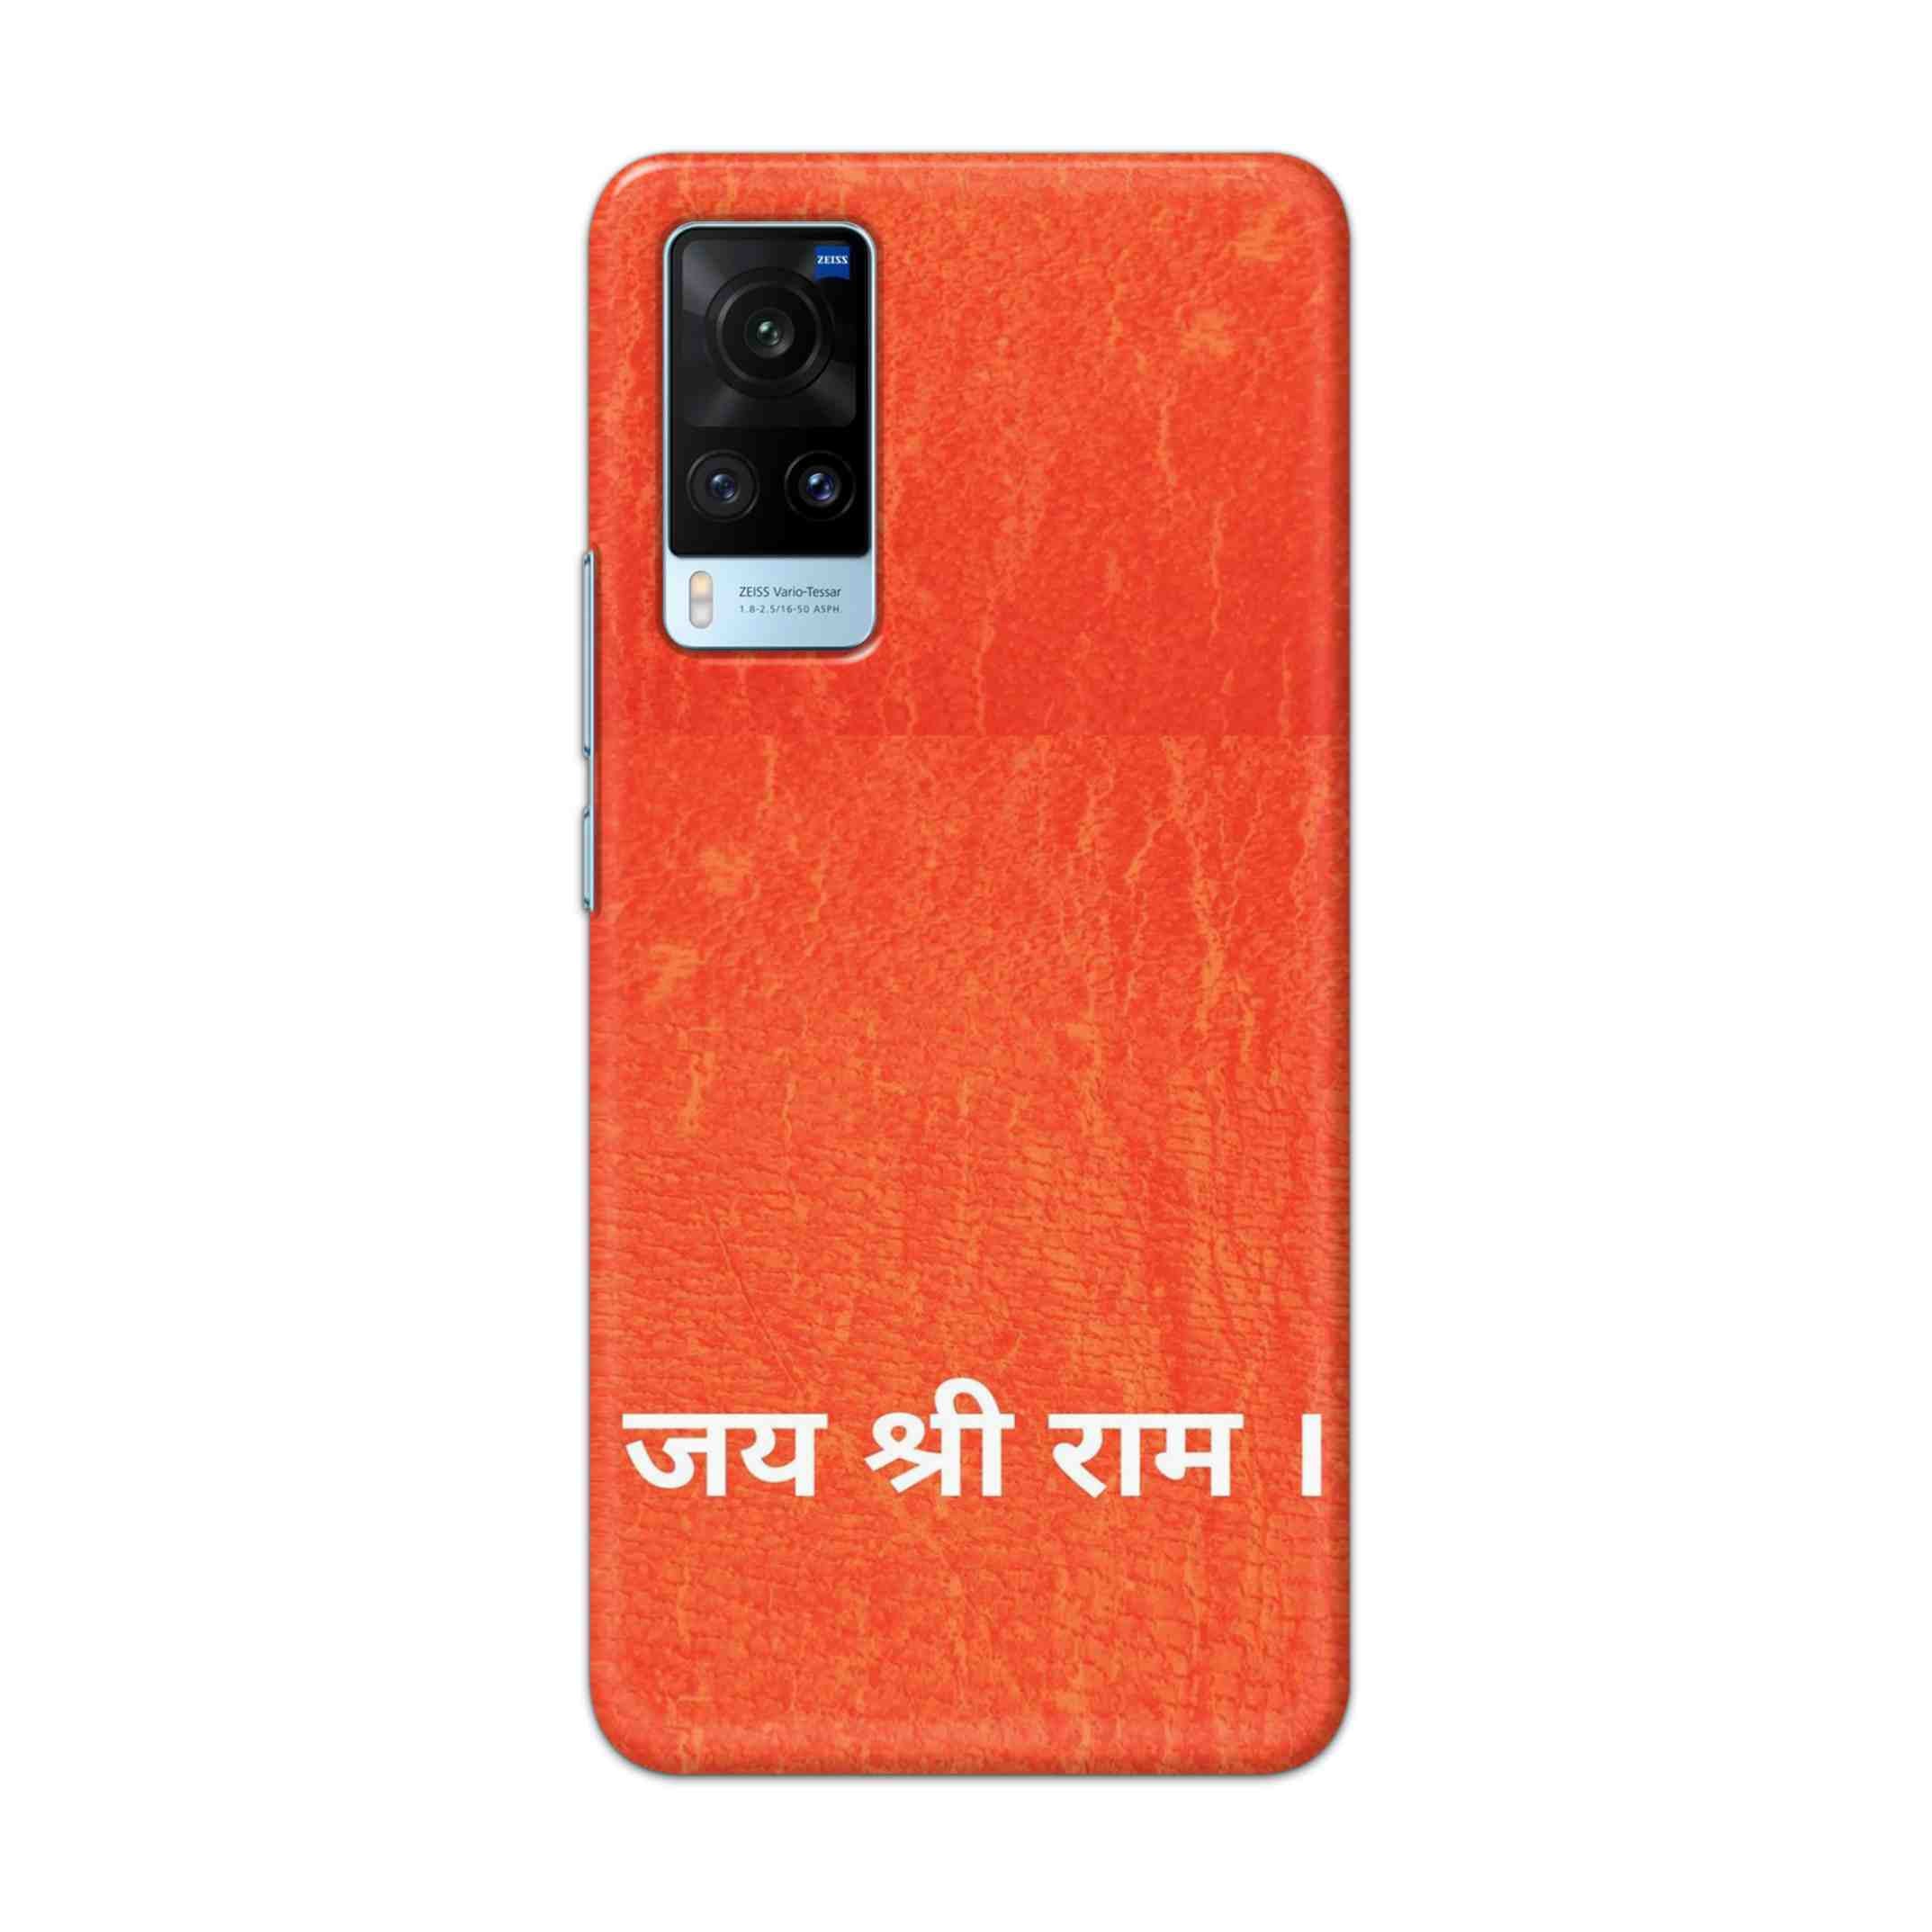 Buy Jai Shree Ram Hard Back Mobile Phone Case Cover For Vivo X60 Online